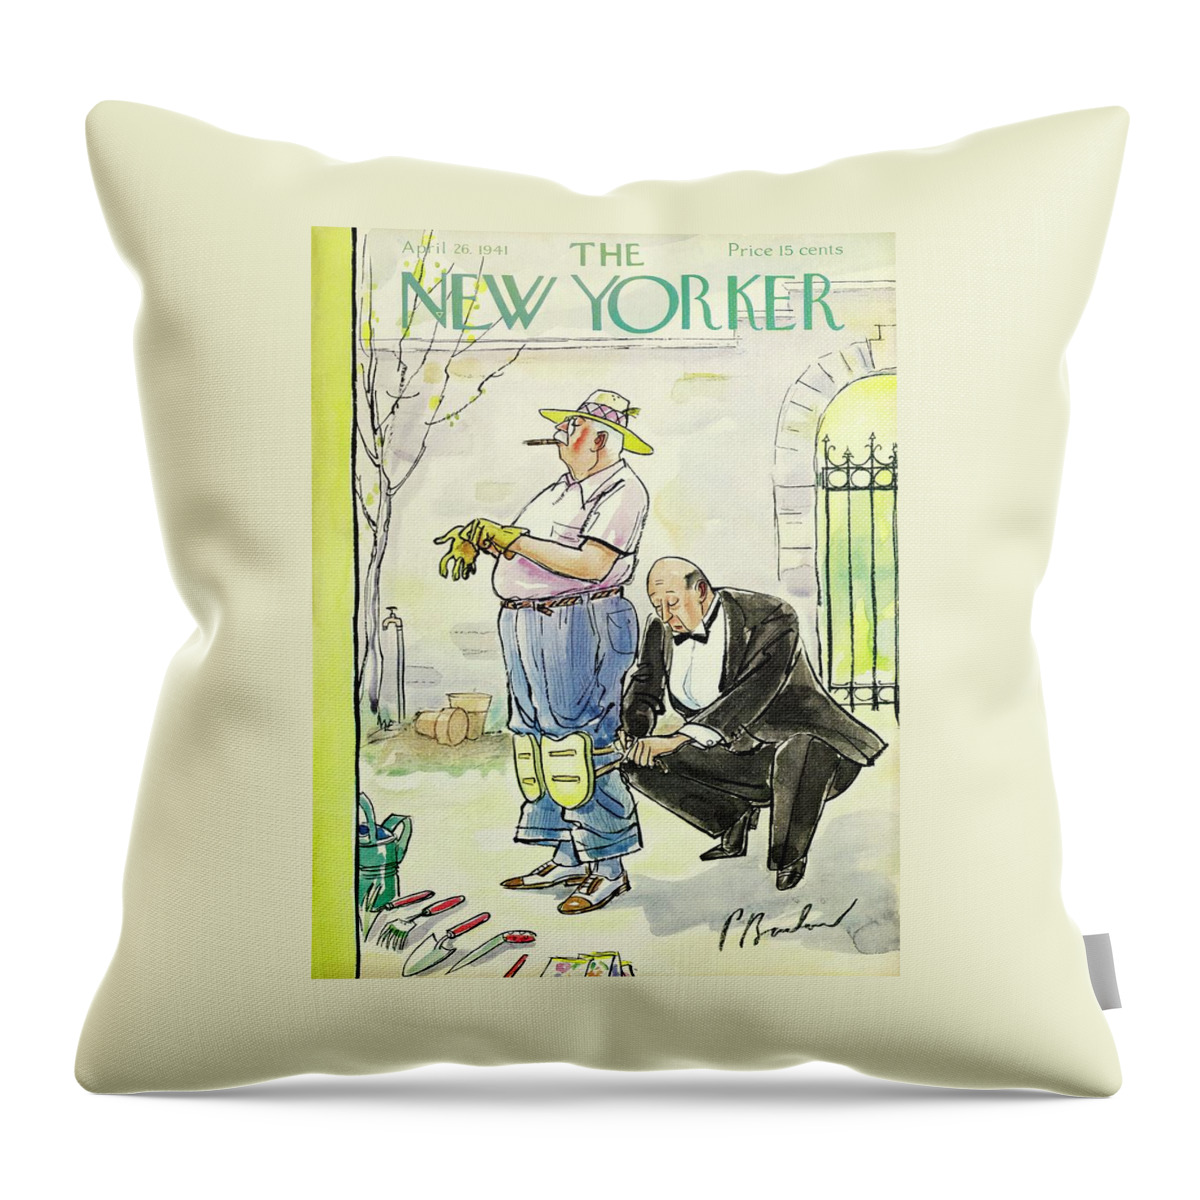 New Yorker April 26 1941 Throw Pillow